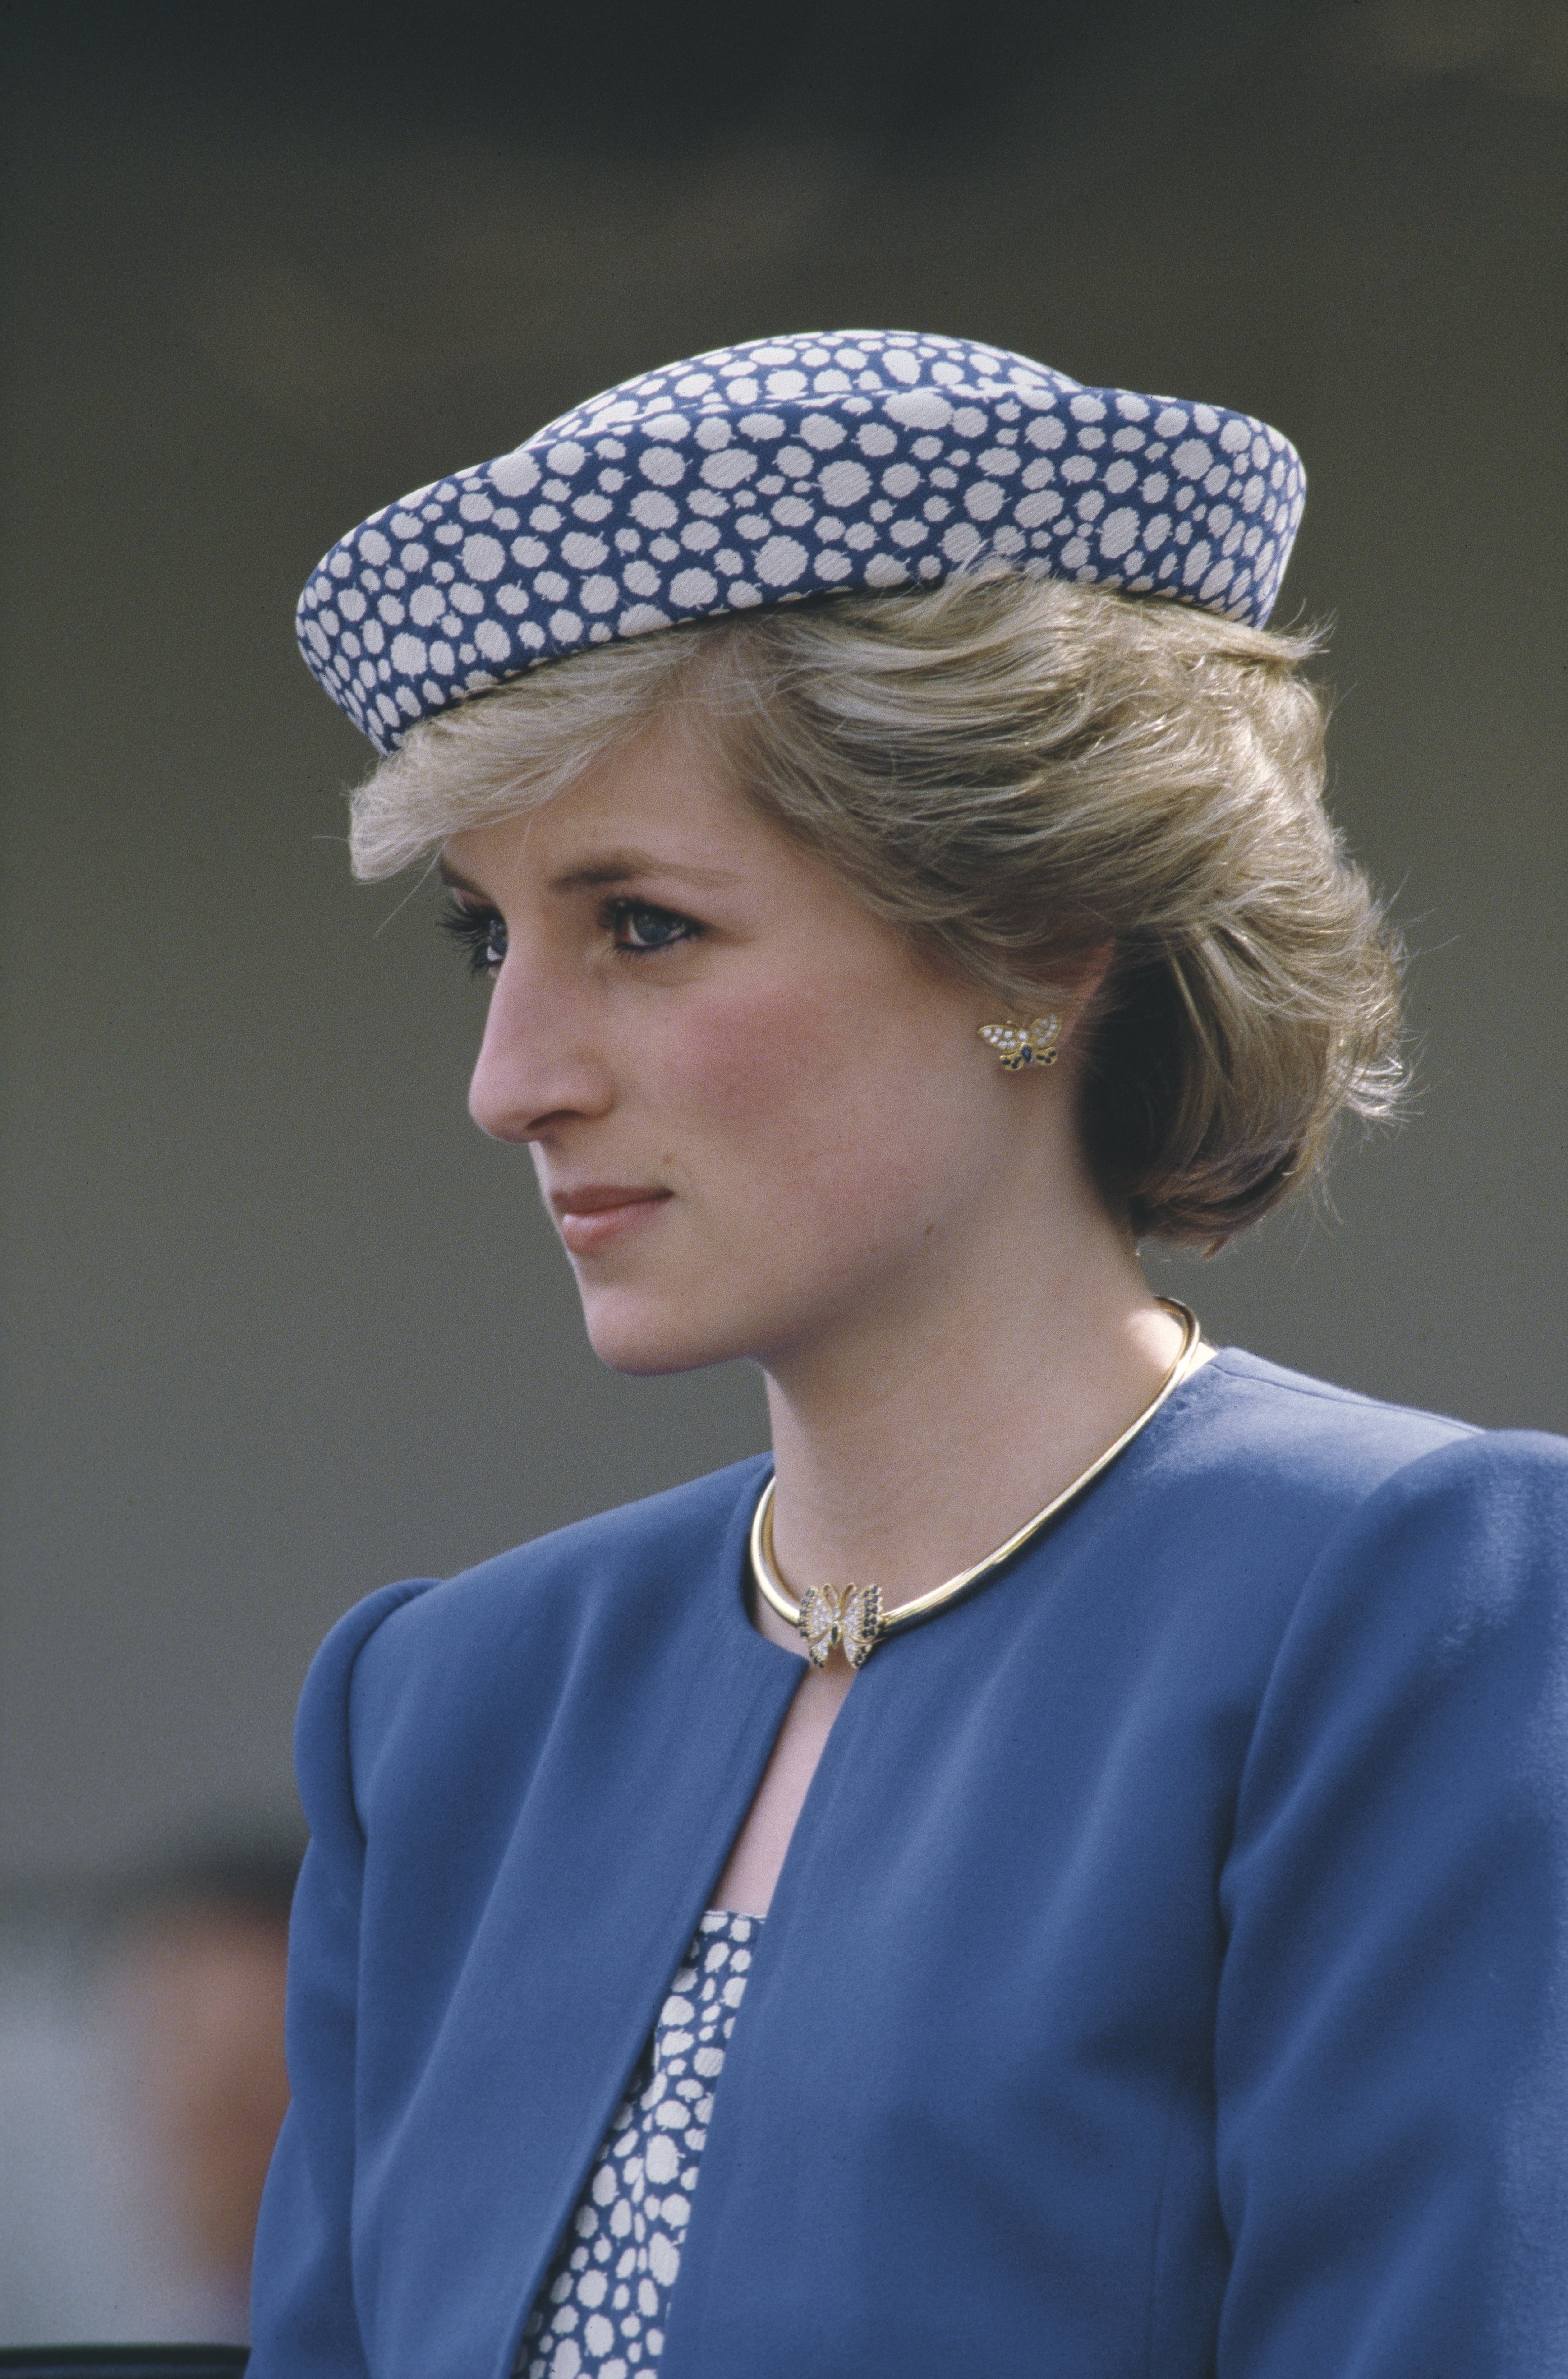 La princesse Diana au Canada en 1986. | Source : Getty Images